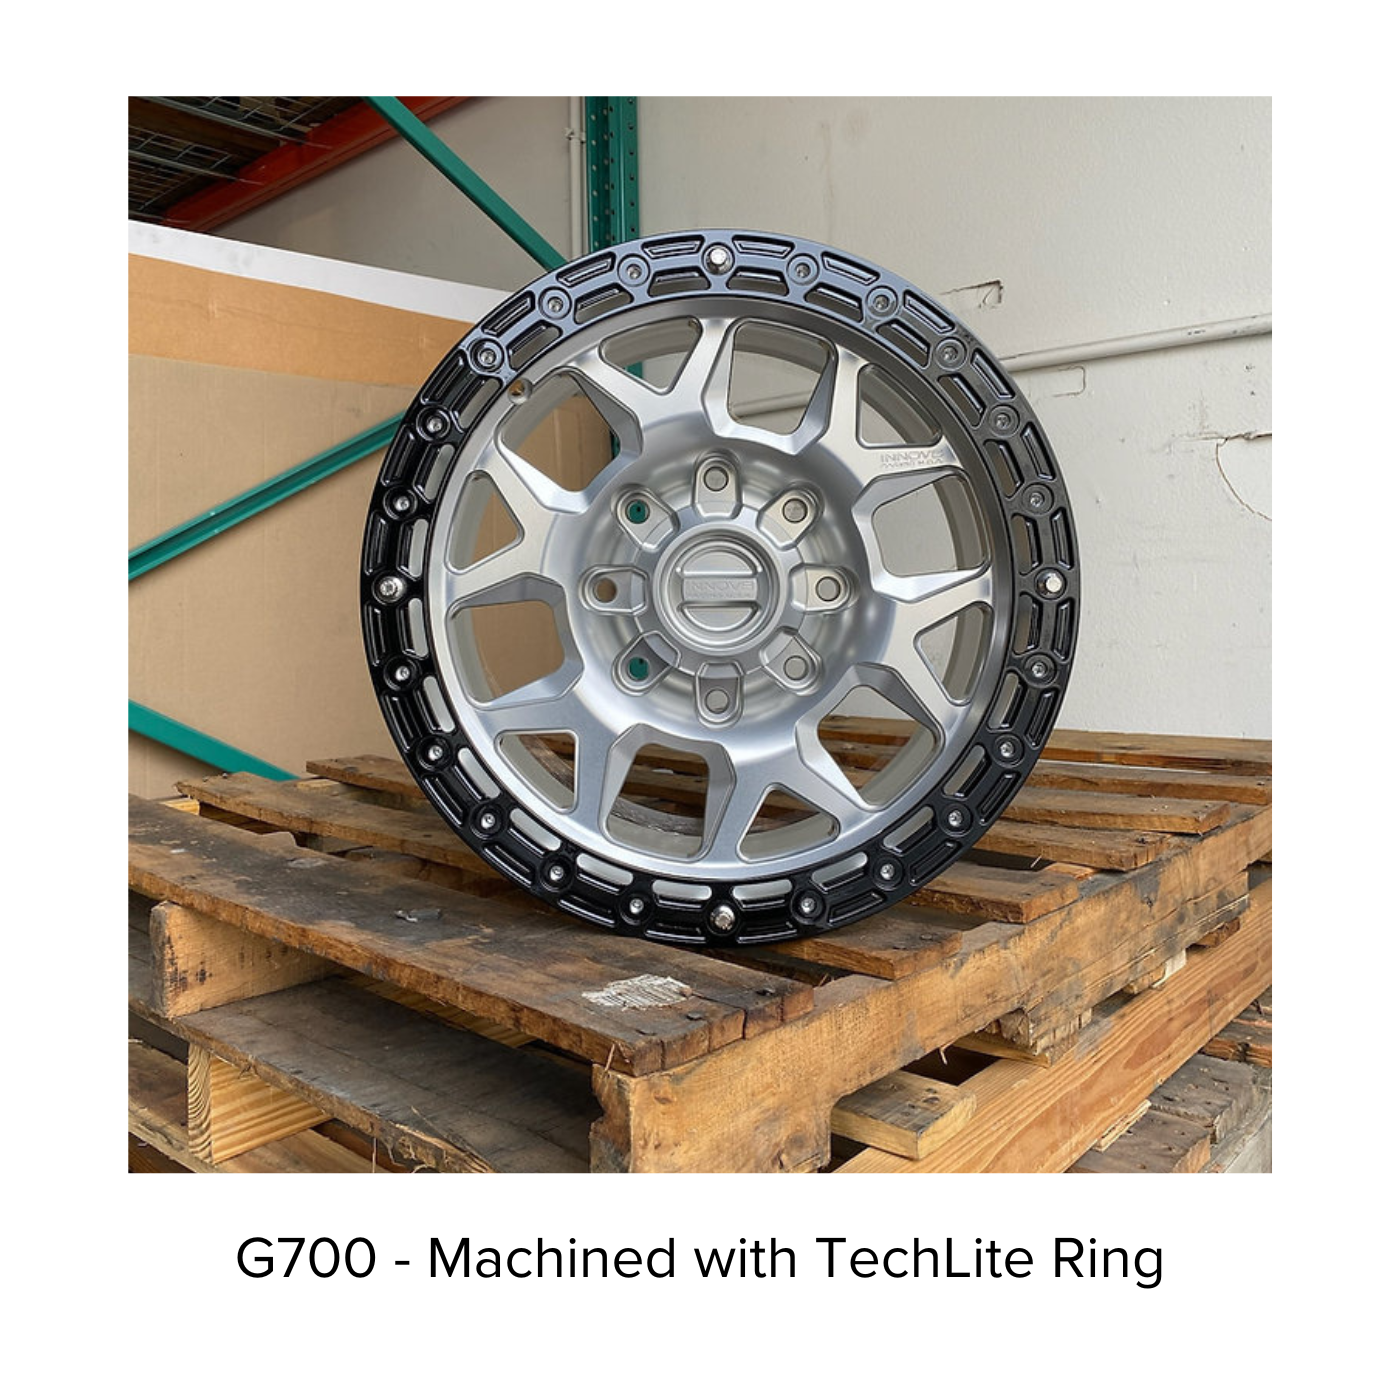 G700 Simulated Beadlock Wheel 18x9.0" 8 Lug - TechLite Ring display